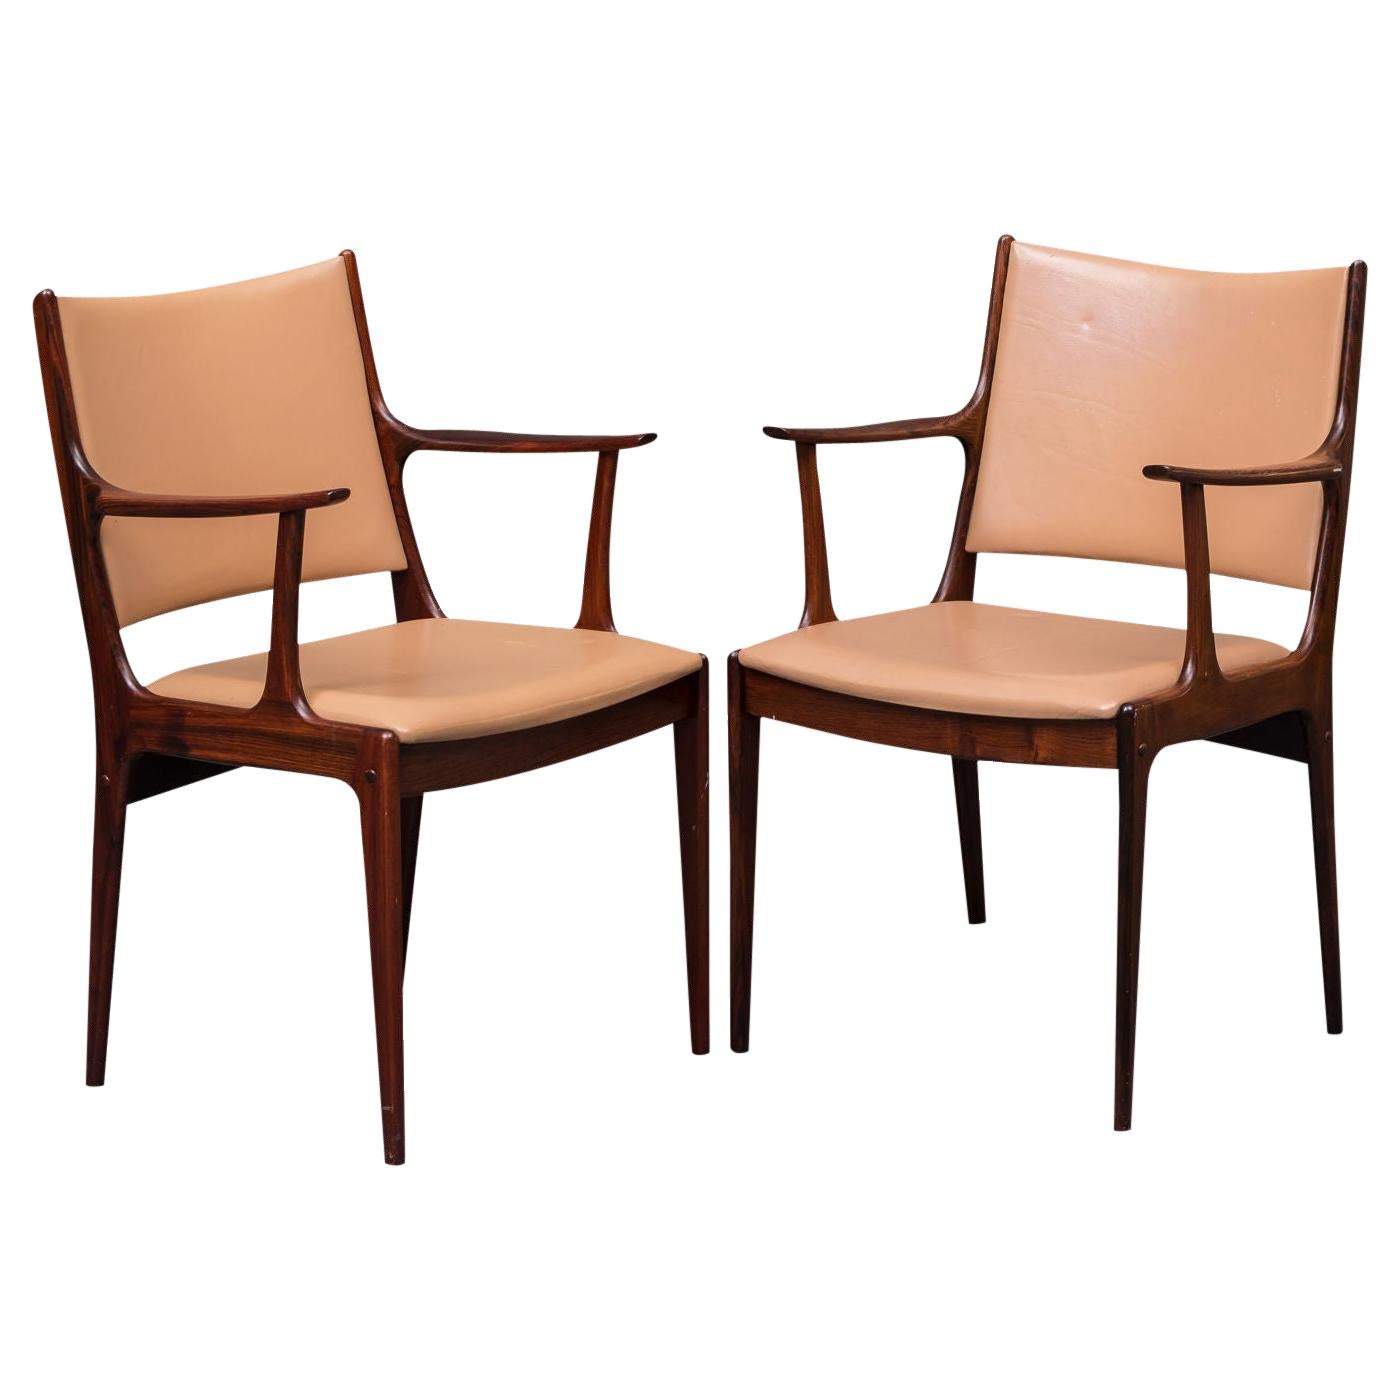 Deux fauteuils en bois de rose restaurés de Johannes Andersen, retapissés sur mesure, inclus en vente